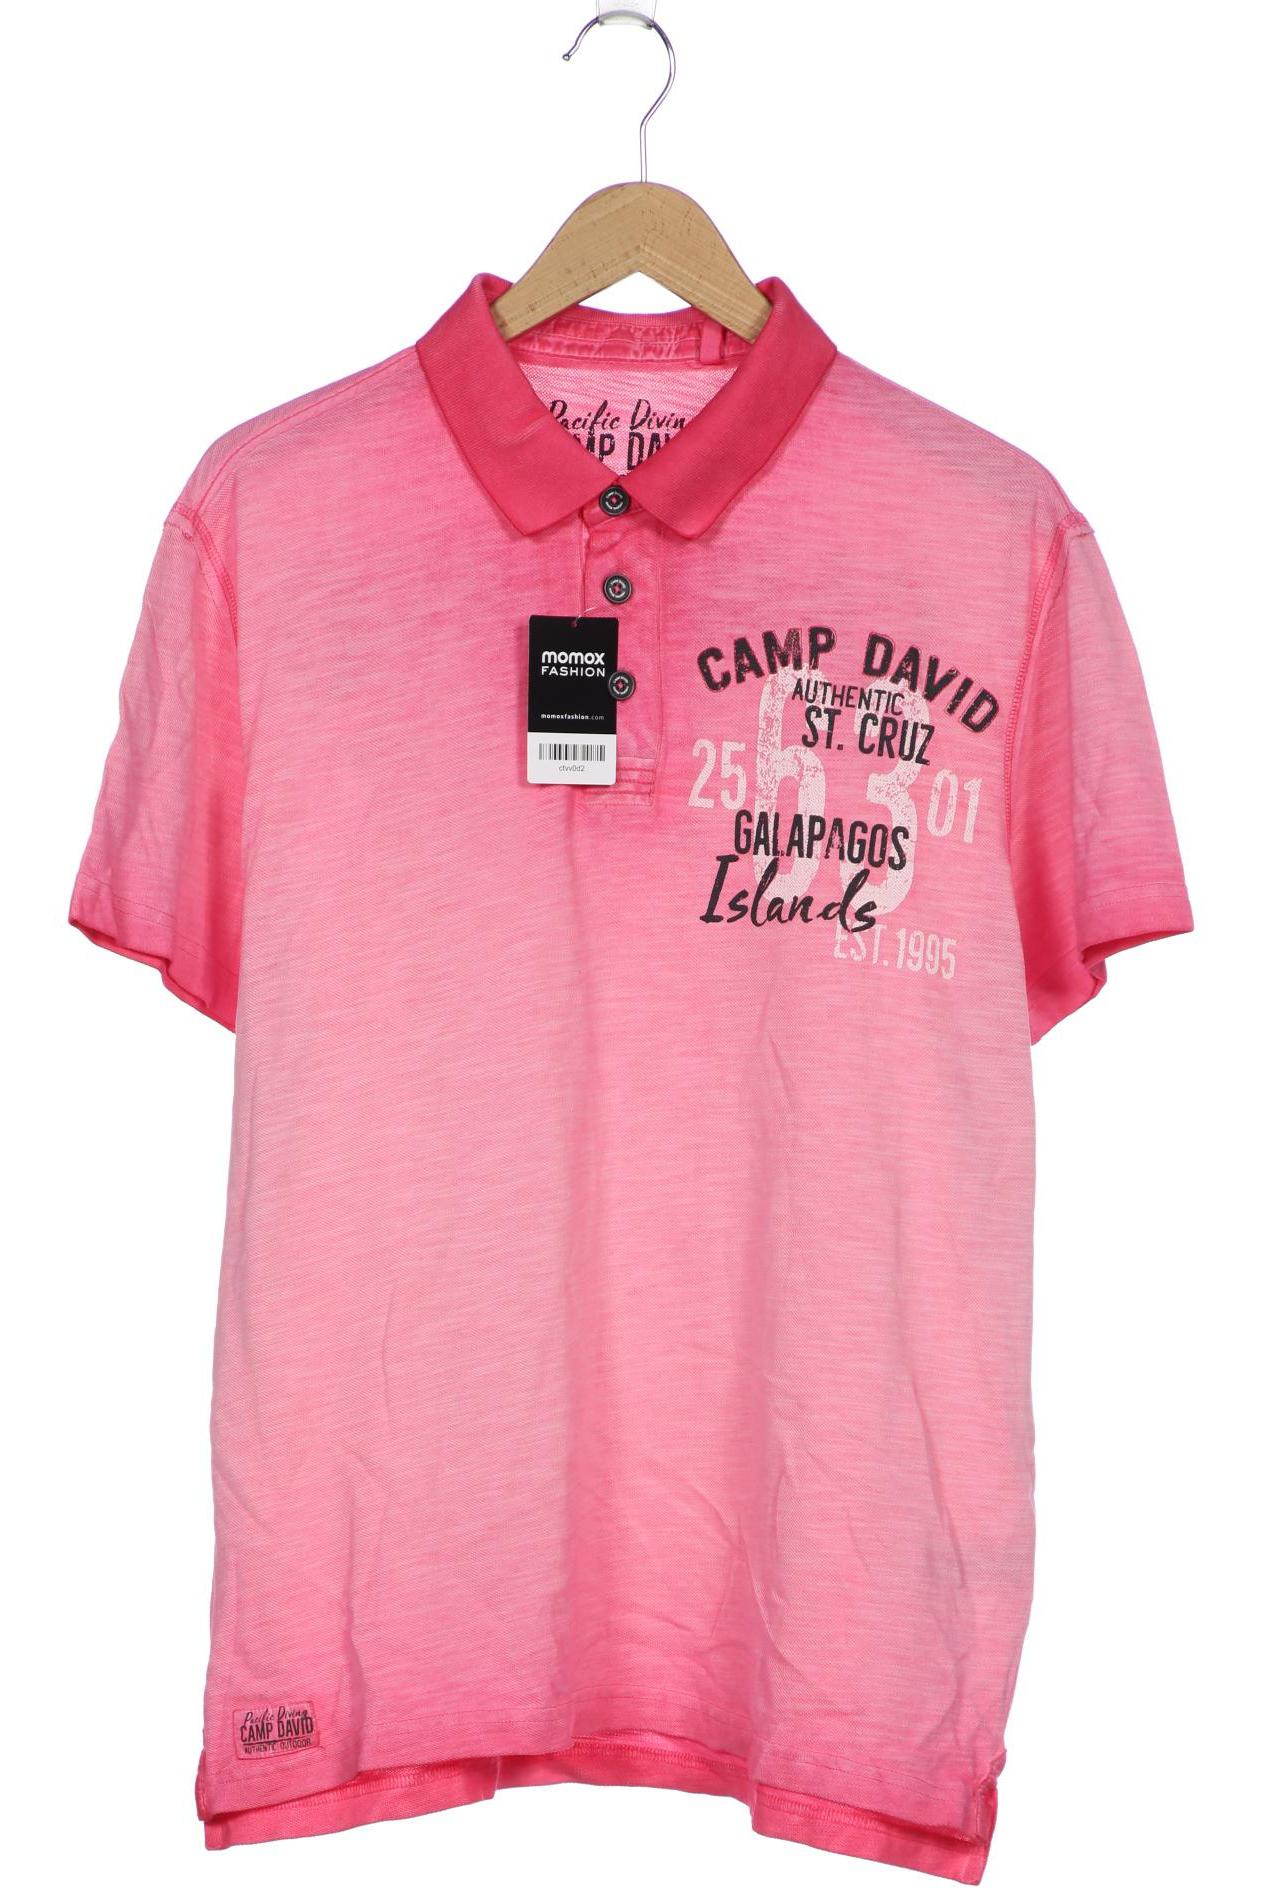 Camp David Herren Poloshirt, pink von camp david